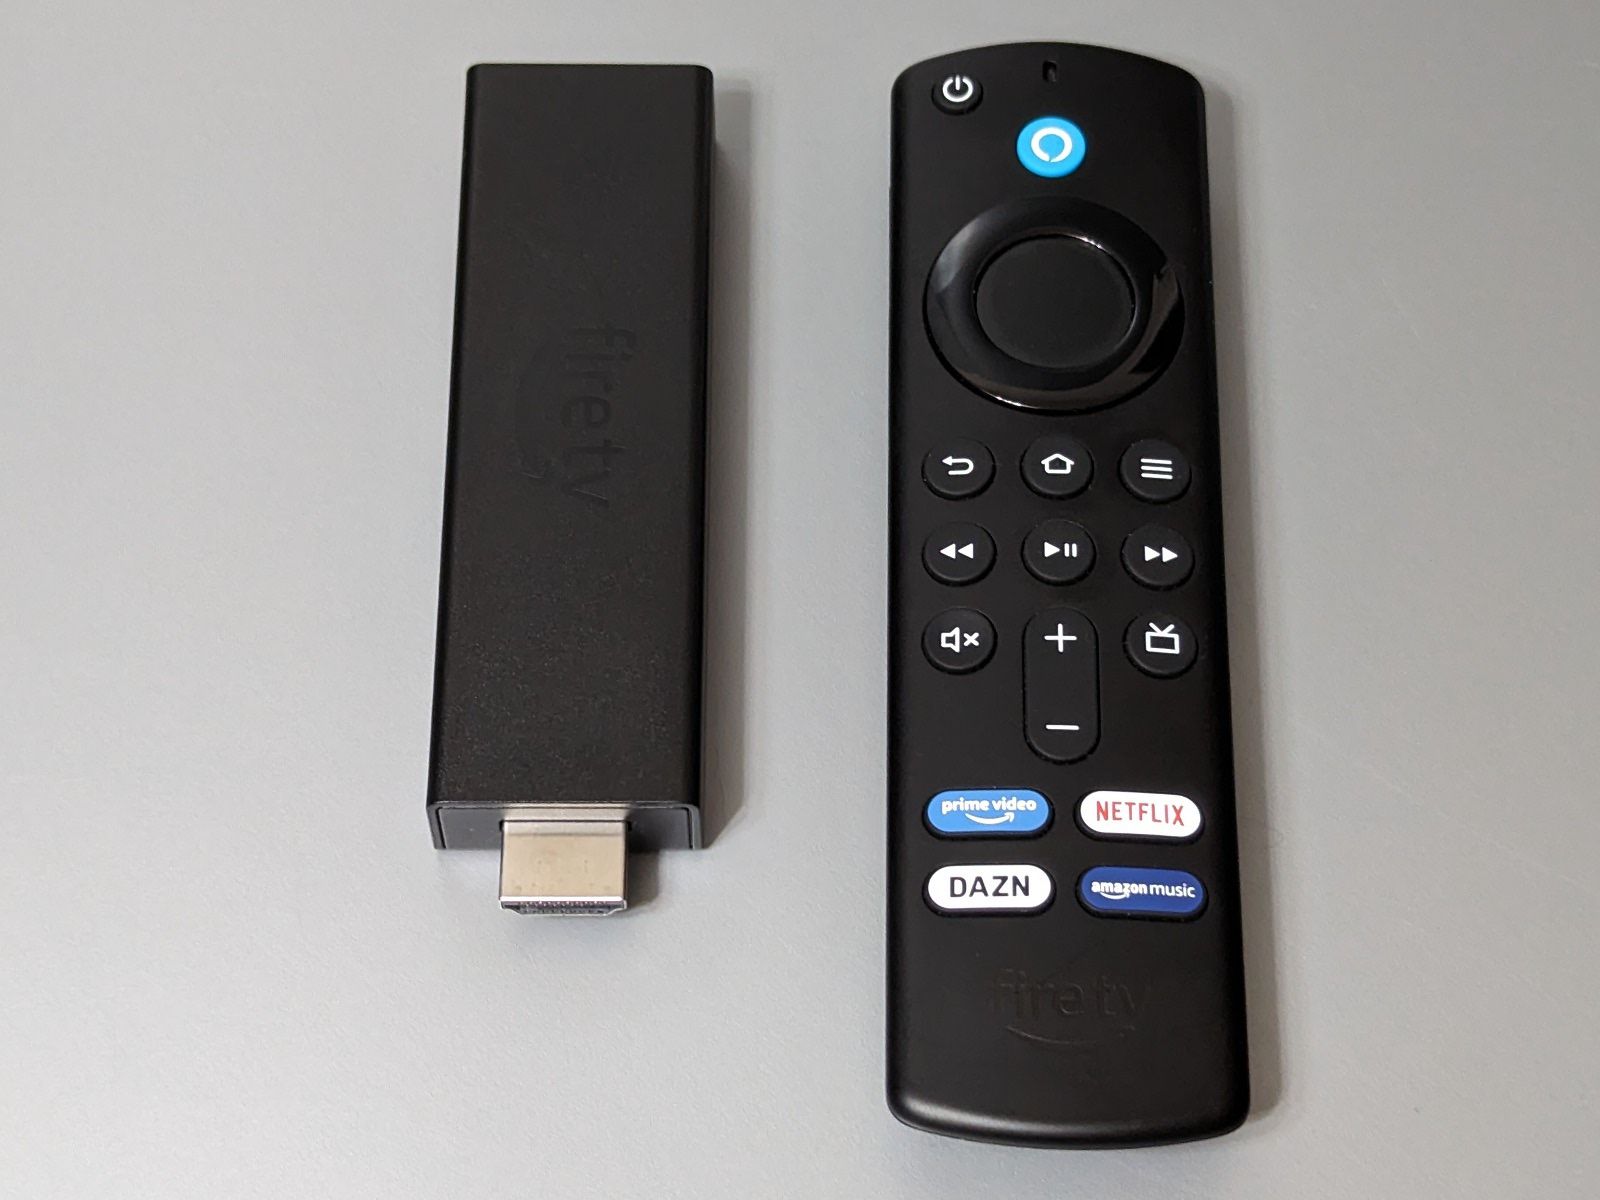 「Fire TV Stick」。本体（左）をテレビのHDMIポートに挿入して電源ケーブルを接続、続いてWi-Fi設定を行うことで、AmazonプライムビデオやNetflixなどの動画配信サービスをテレビで楽しめるようになります。操作にはリモコン（右）を使用します